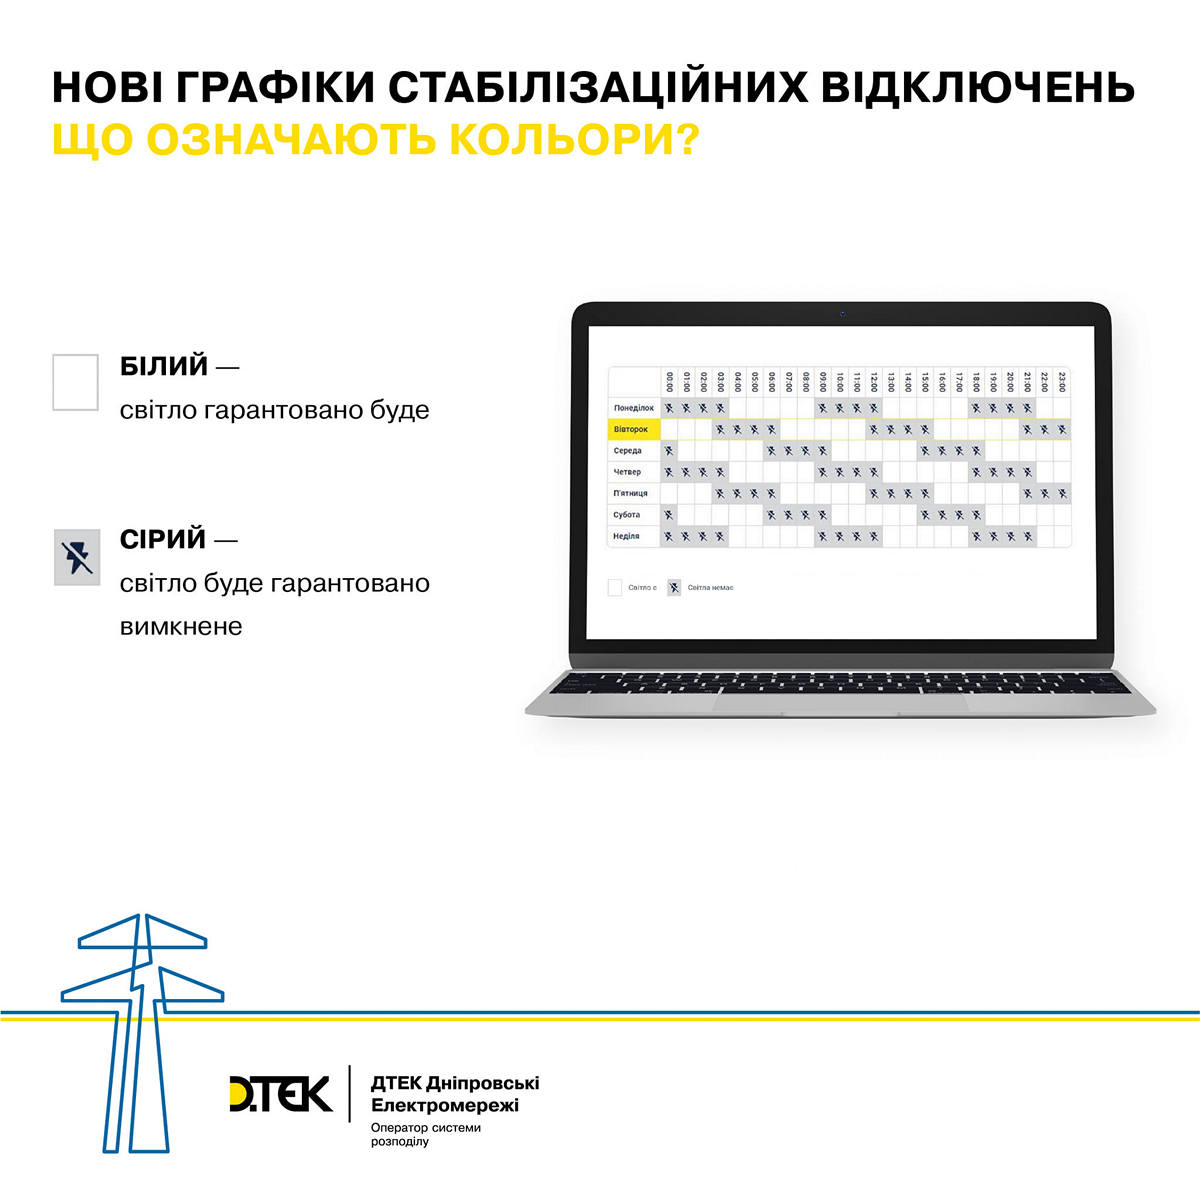 ДТЕК оновив графік відключень світла у Дніпропетровській області з 21 грудня